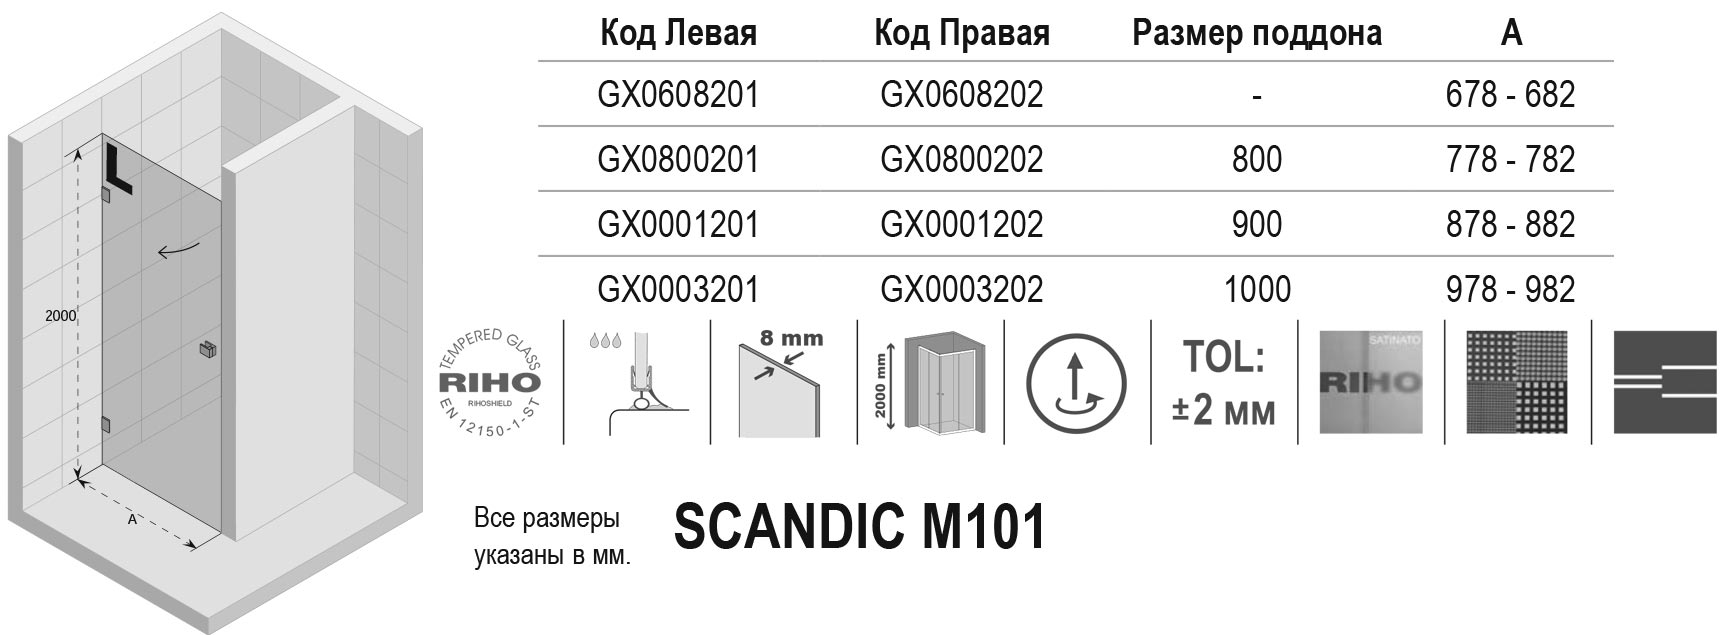 Чертёж Riho Scandic M101 GX0800201